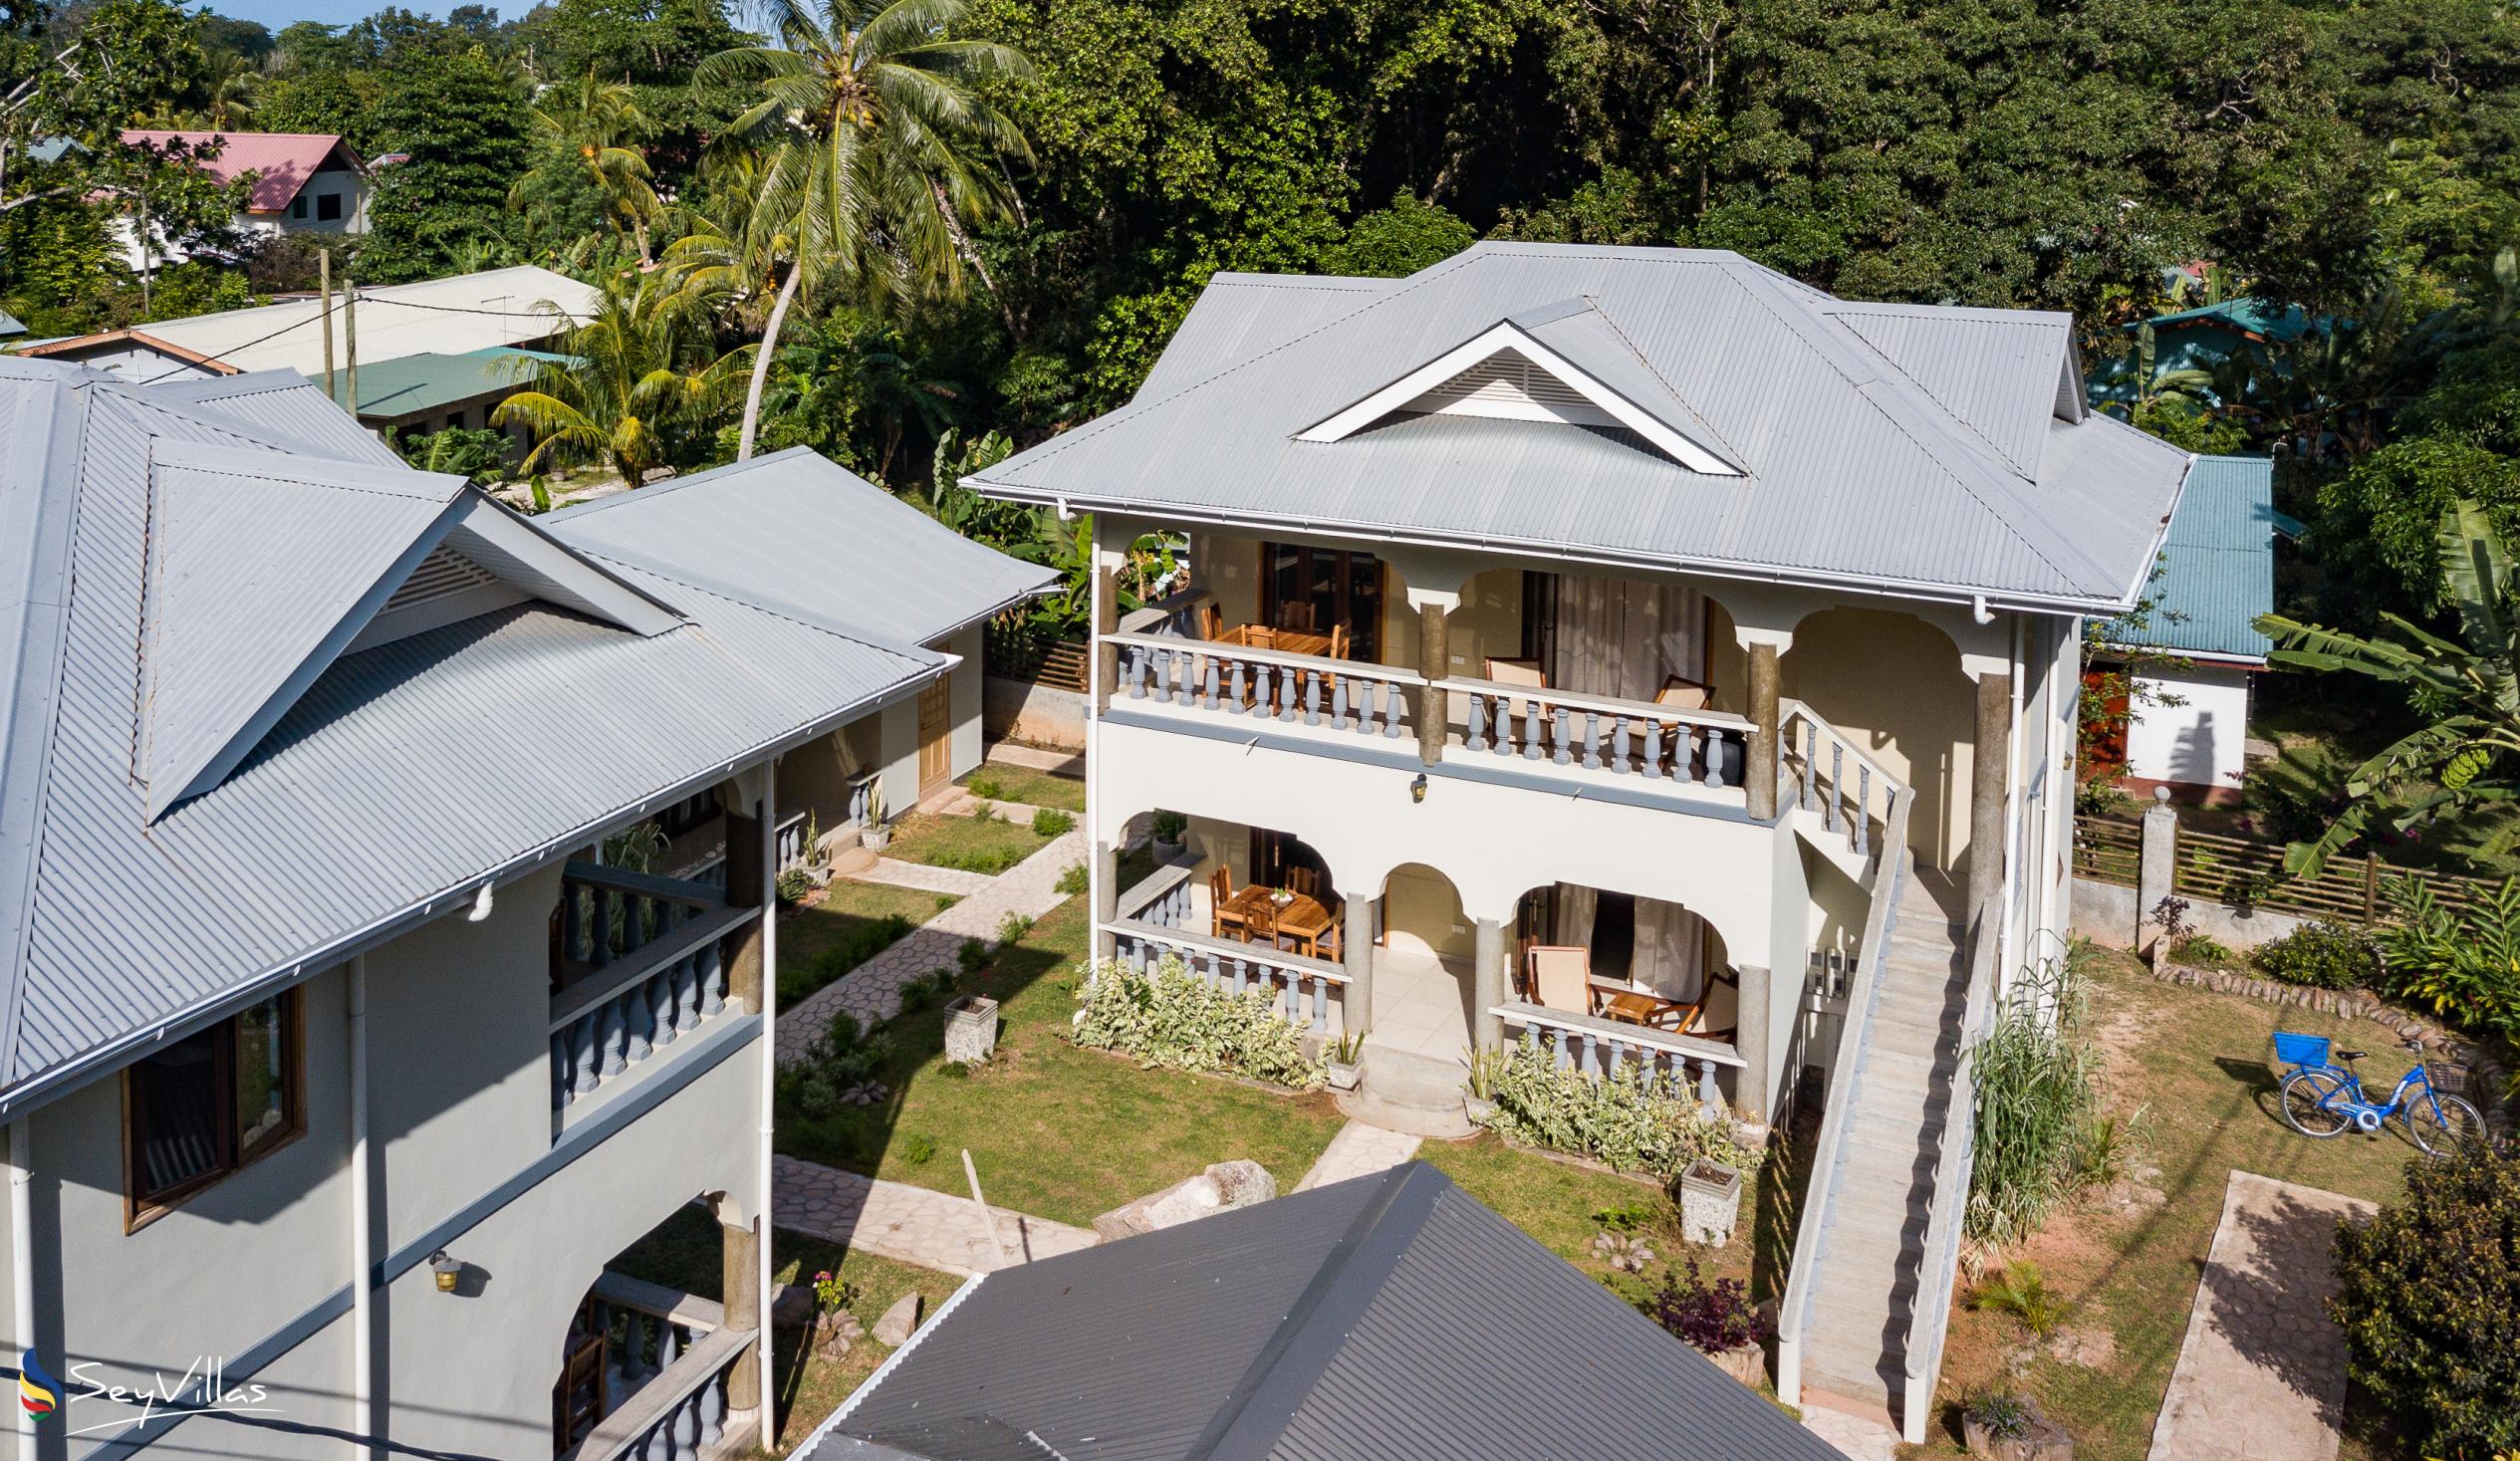 Photo 7: Maison Ed-Elle - Outdoor area - La Digue (Seychelles)